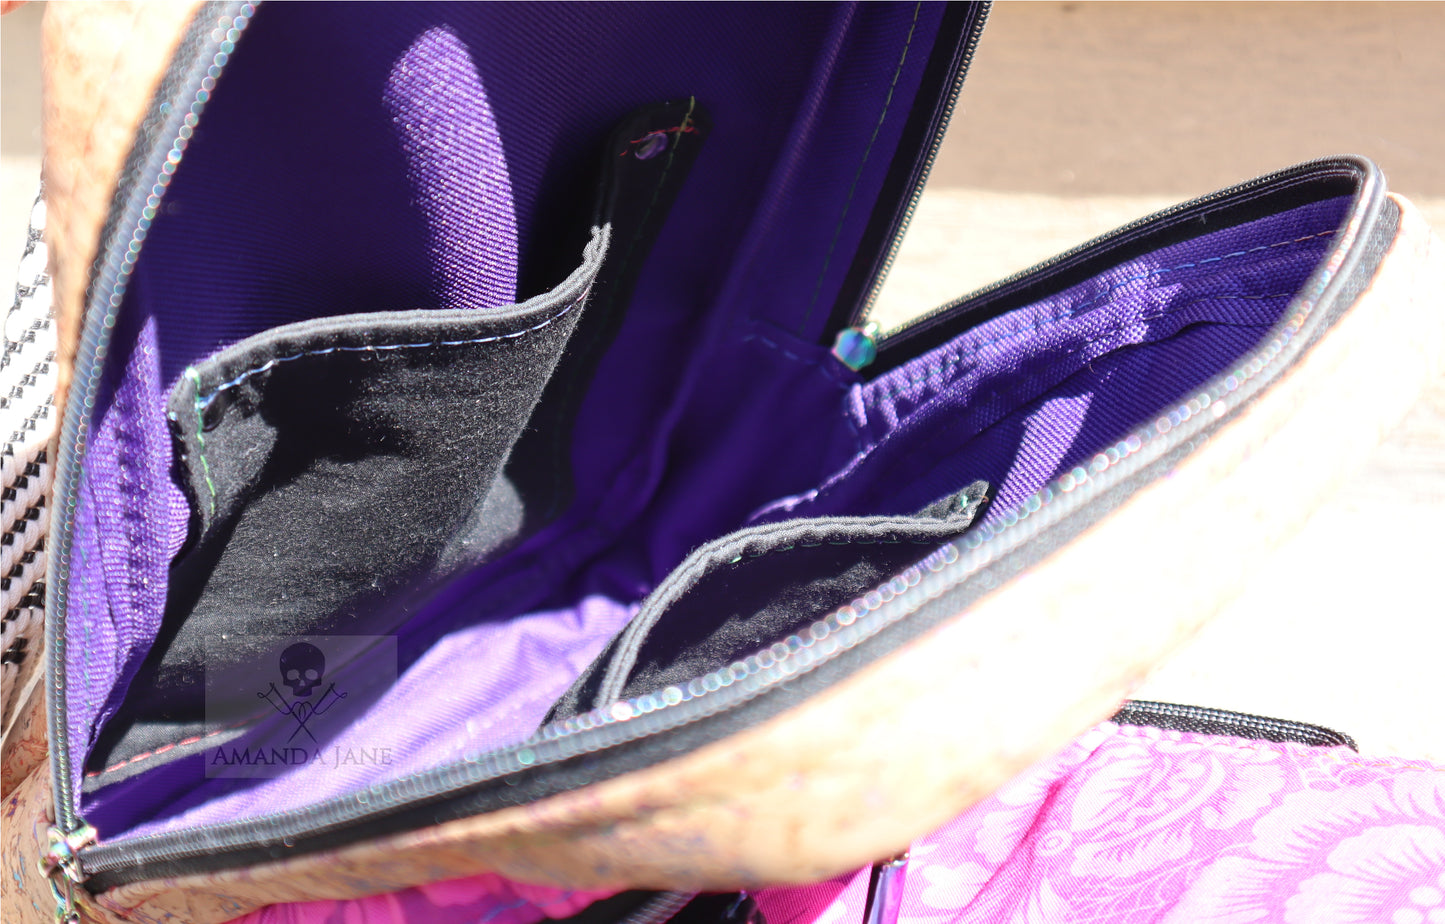 Handcrafted purse backpack shoulder sling Tula Pink